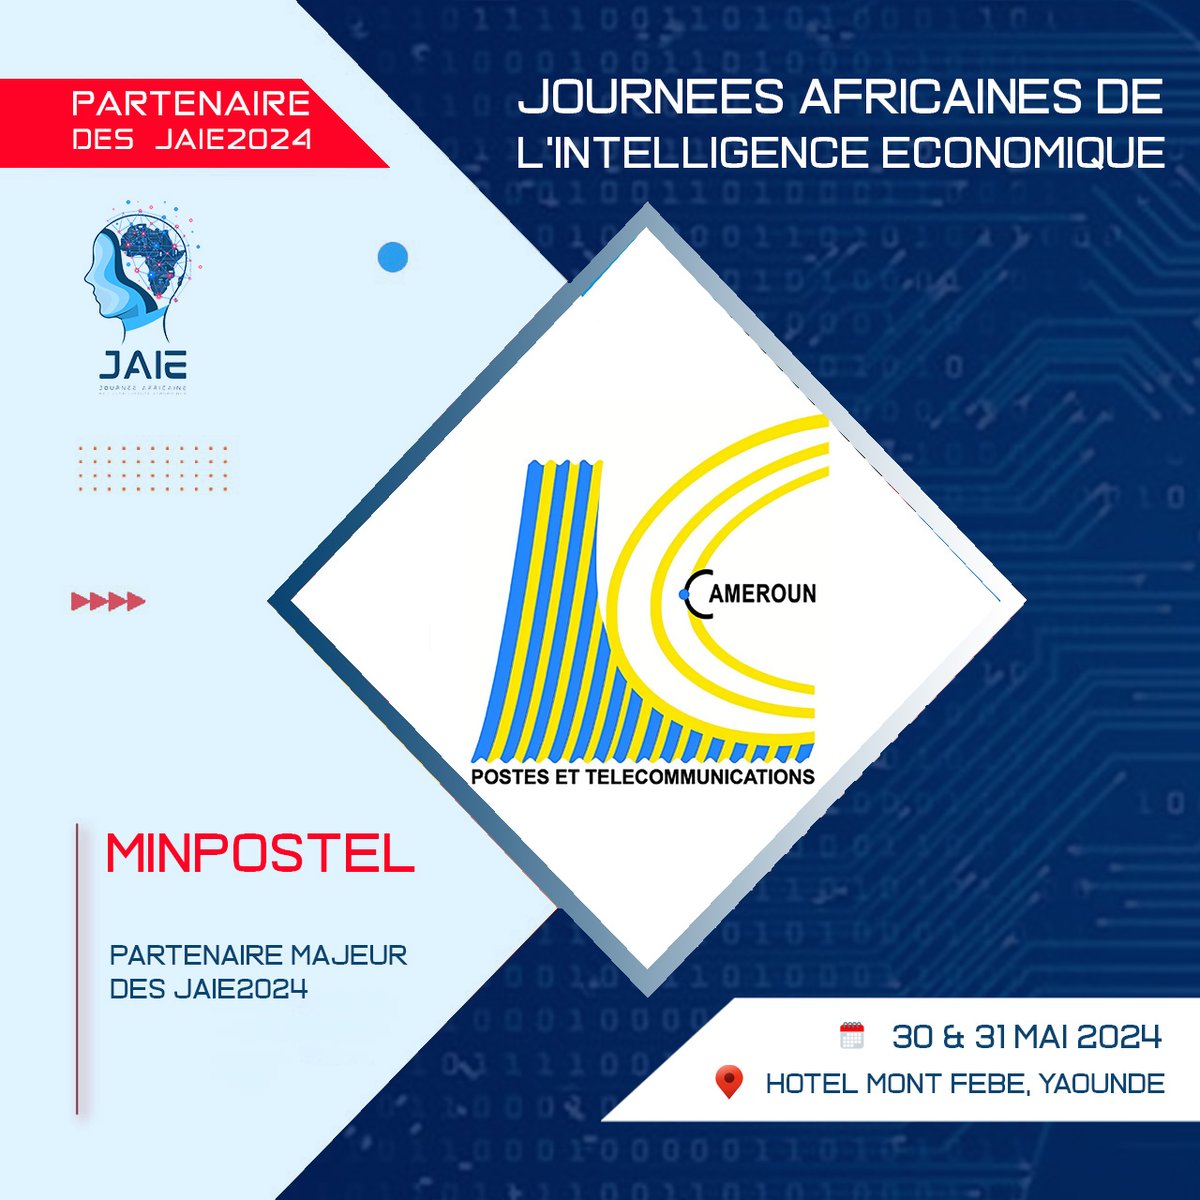 La 7ème édition des Journées africaines de l’intelligence économique #JAIE2024 du 30 au 31 mai 2024, à Yaoundé, se réjouit du partenariat du @minpostel2035 pour sa bonne tenue. 

Plus d'informations : les-jaie.info

#IntelligenceEconomique  #IntelligenceTerroriale